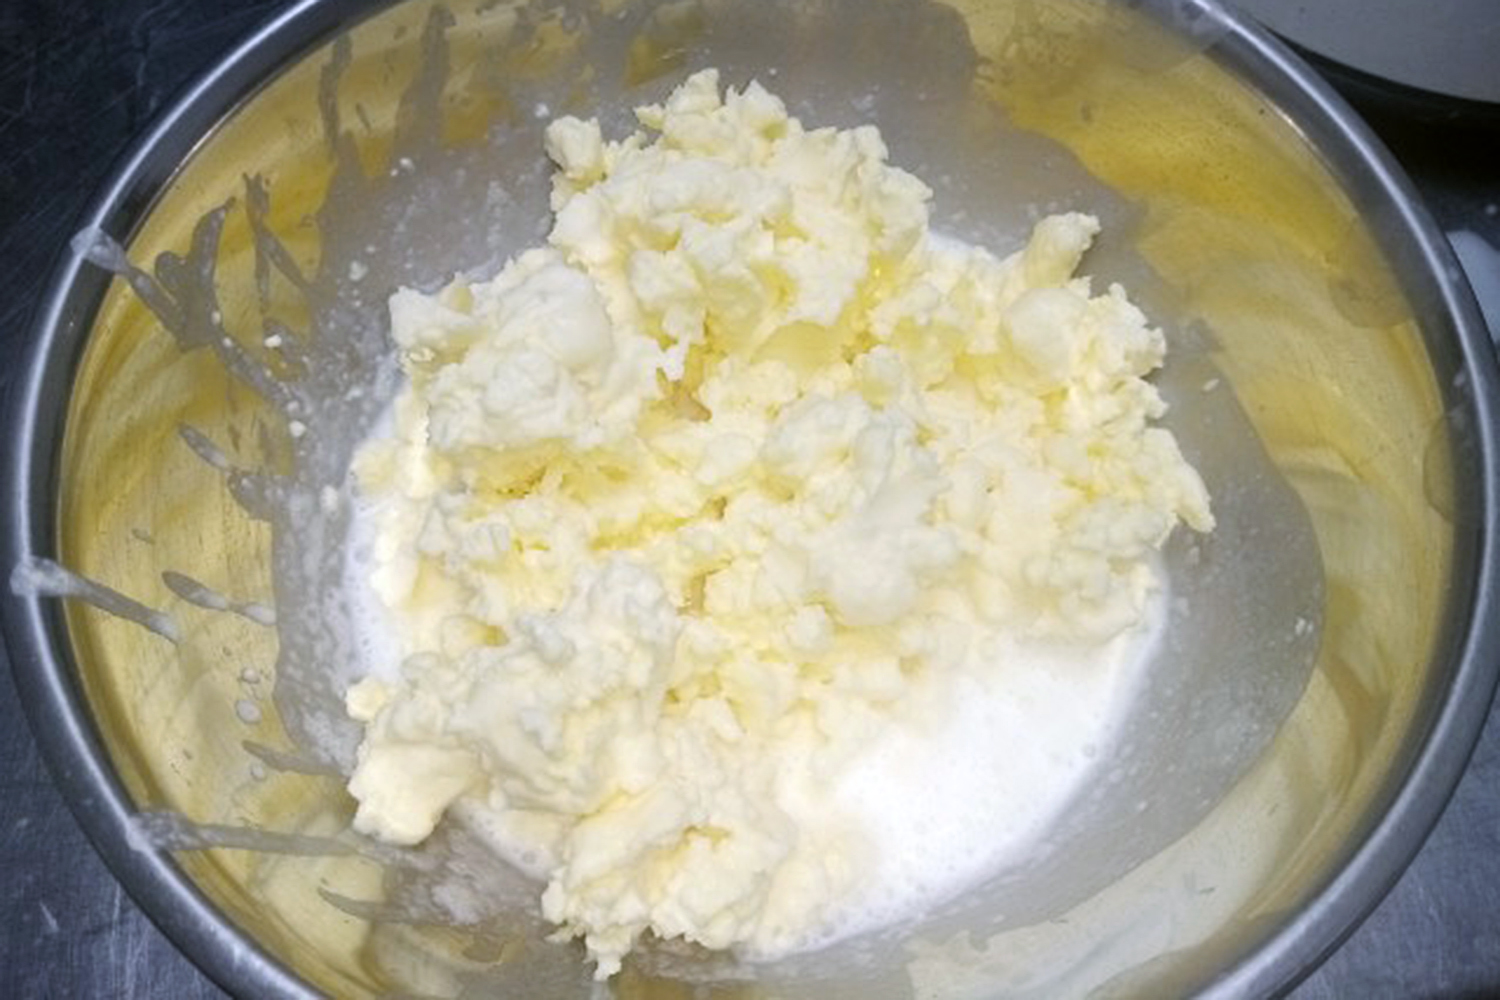 Produkt finalny, czyli osełki własnoręcznie zrobionego masła oraz poszczególne etapy jego wyrabiania, a także odcedzona maślanka / Fot. Marzena Smoręda